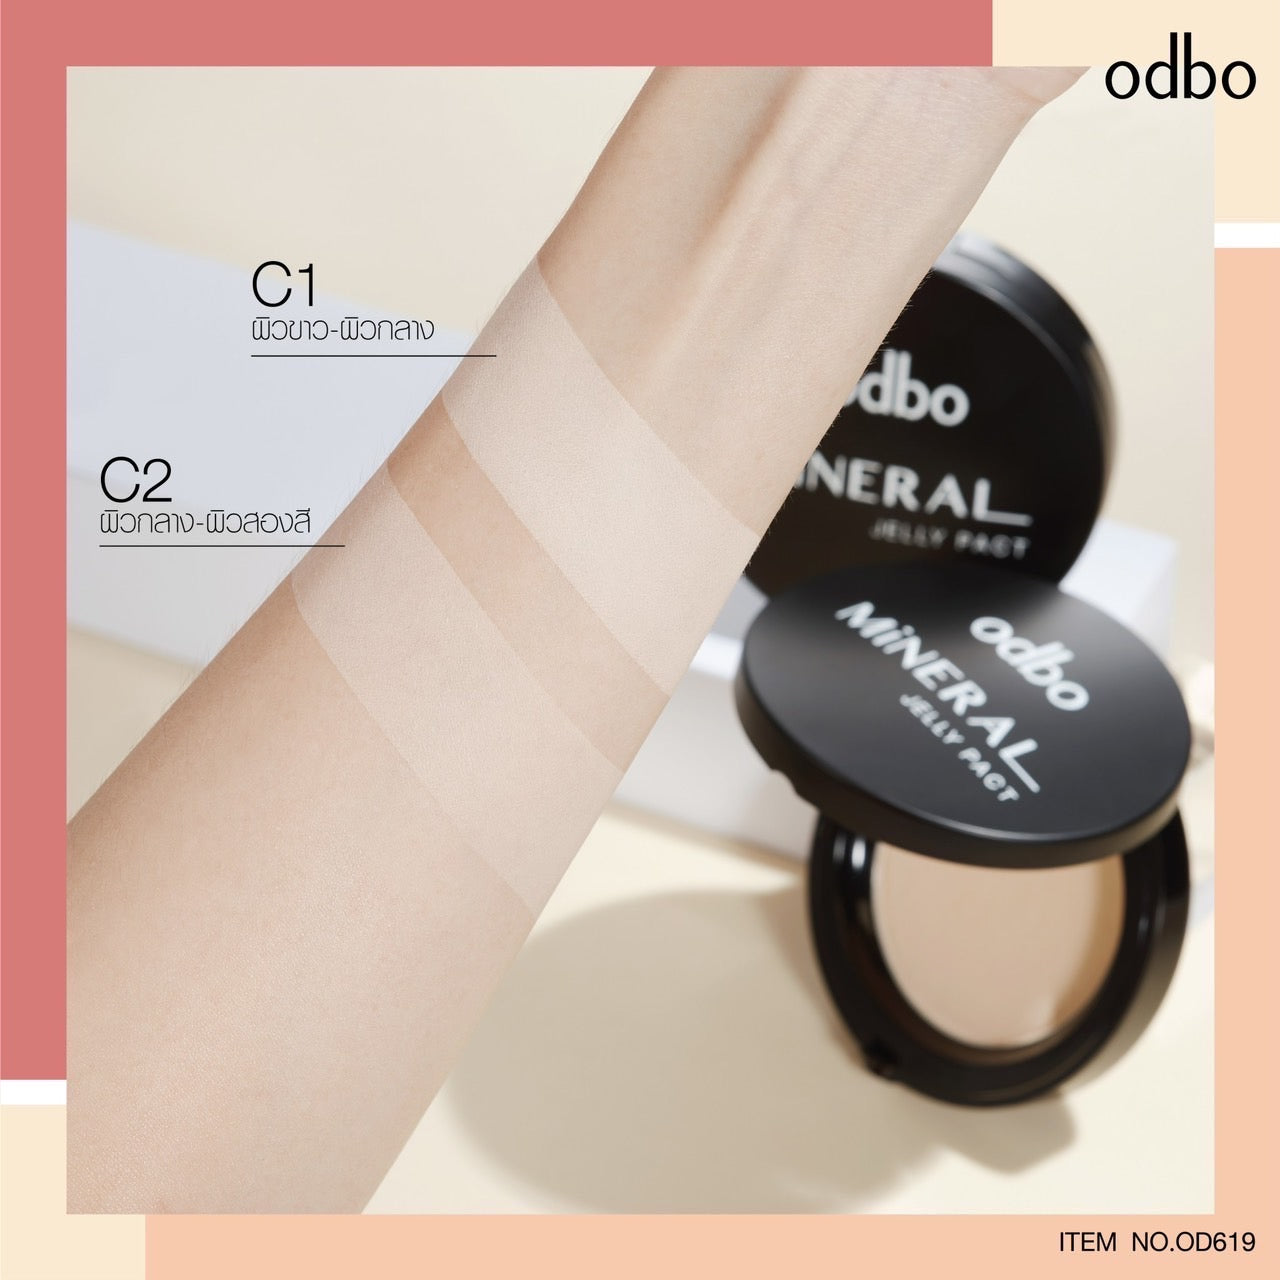 Odbo Mineral Jelly Pact Makeup Powder #OD619 : โอดีบีโอ ออโด้ แป้ง มิเนอรัล เจลลี่ แพค